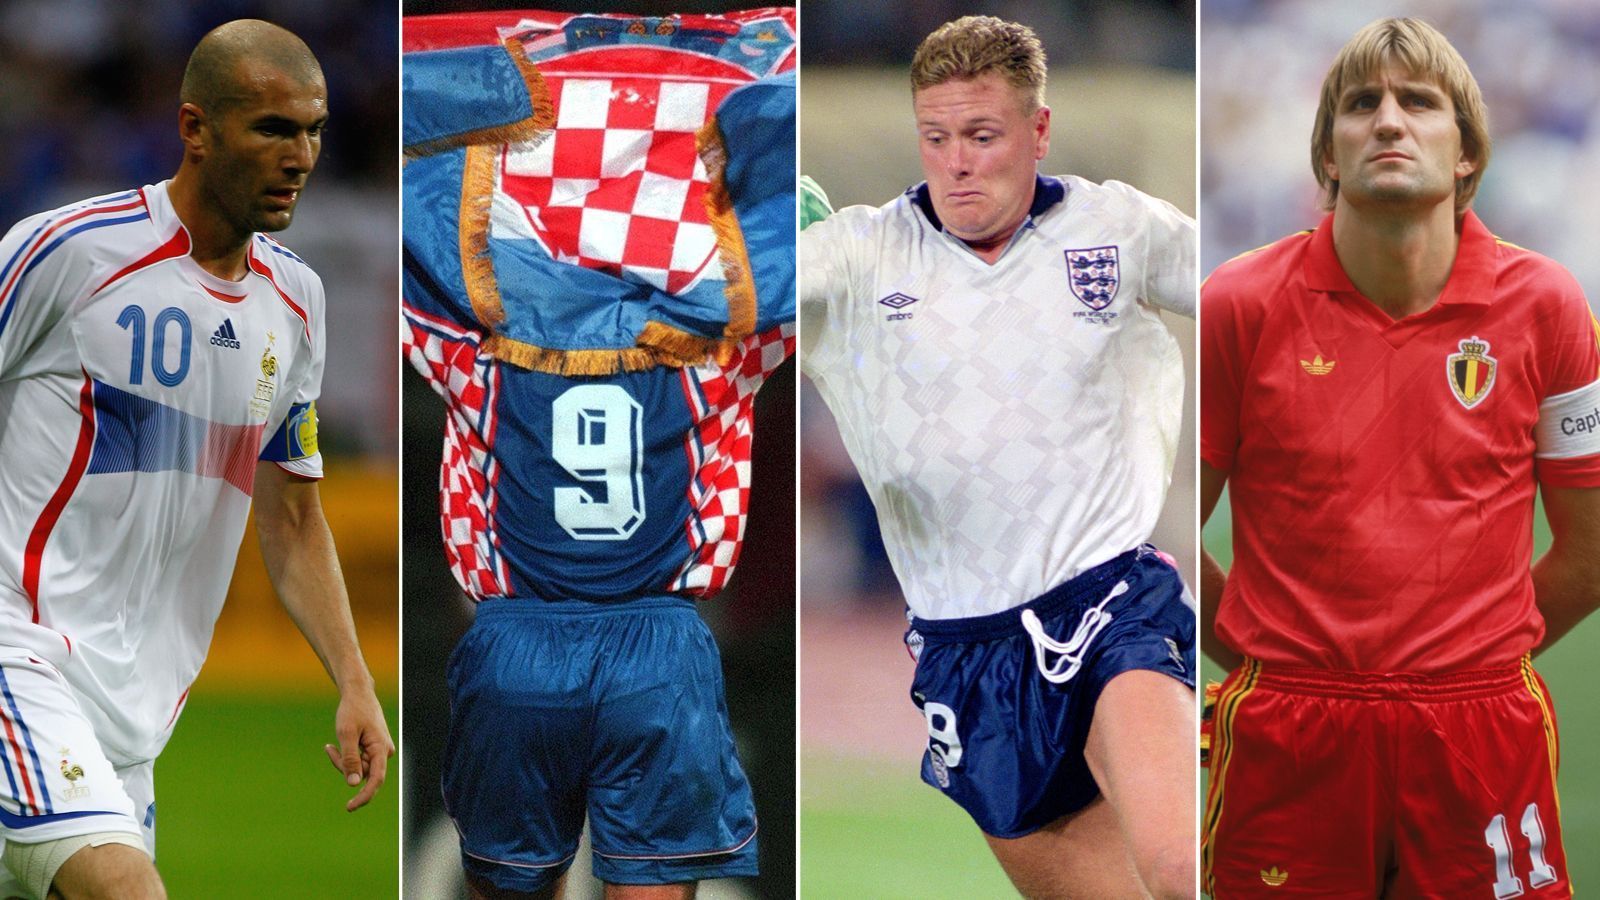 
                <strong>Als Frankreich, Kroatien, England und Belgien zuletzt im WM-Halbfinale standen ...</strong><br>
                Wie sah die Welt aus, als Frankreich, Kroatien, England und Belgien zuletzt im WM-Halbfinale standen? ran.de gibt einen kurzen Überblick über die Jahre 2006, 1998, 1990 und 1986.
              